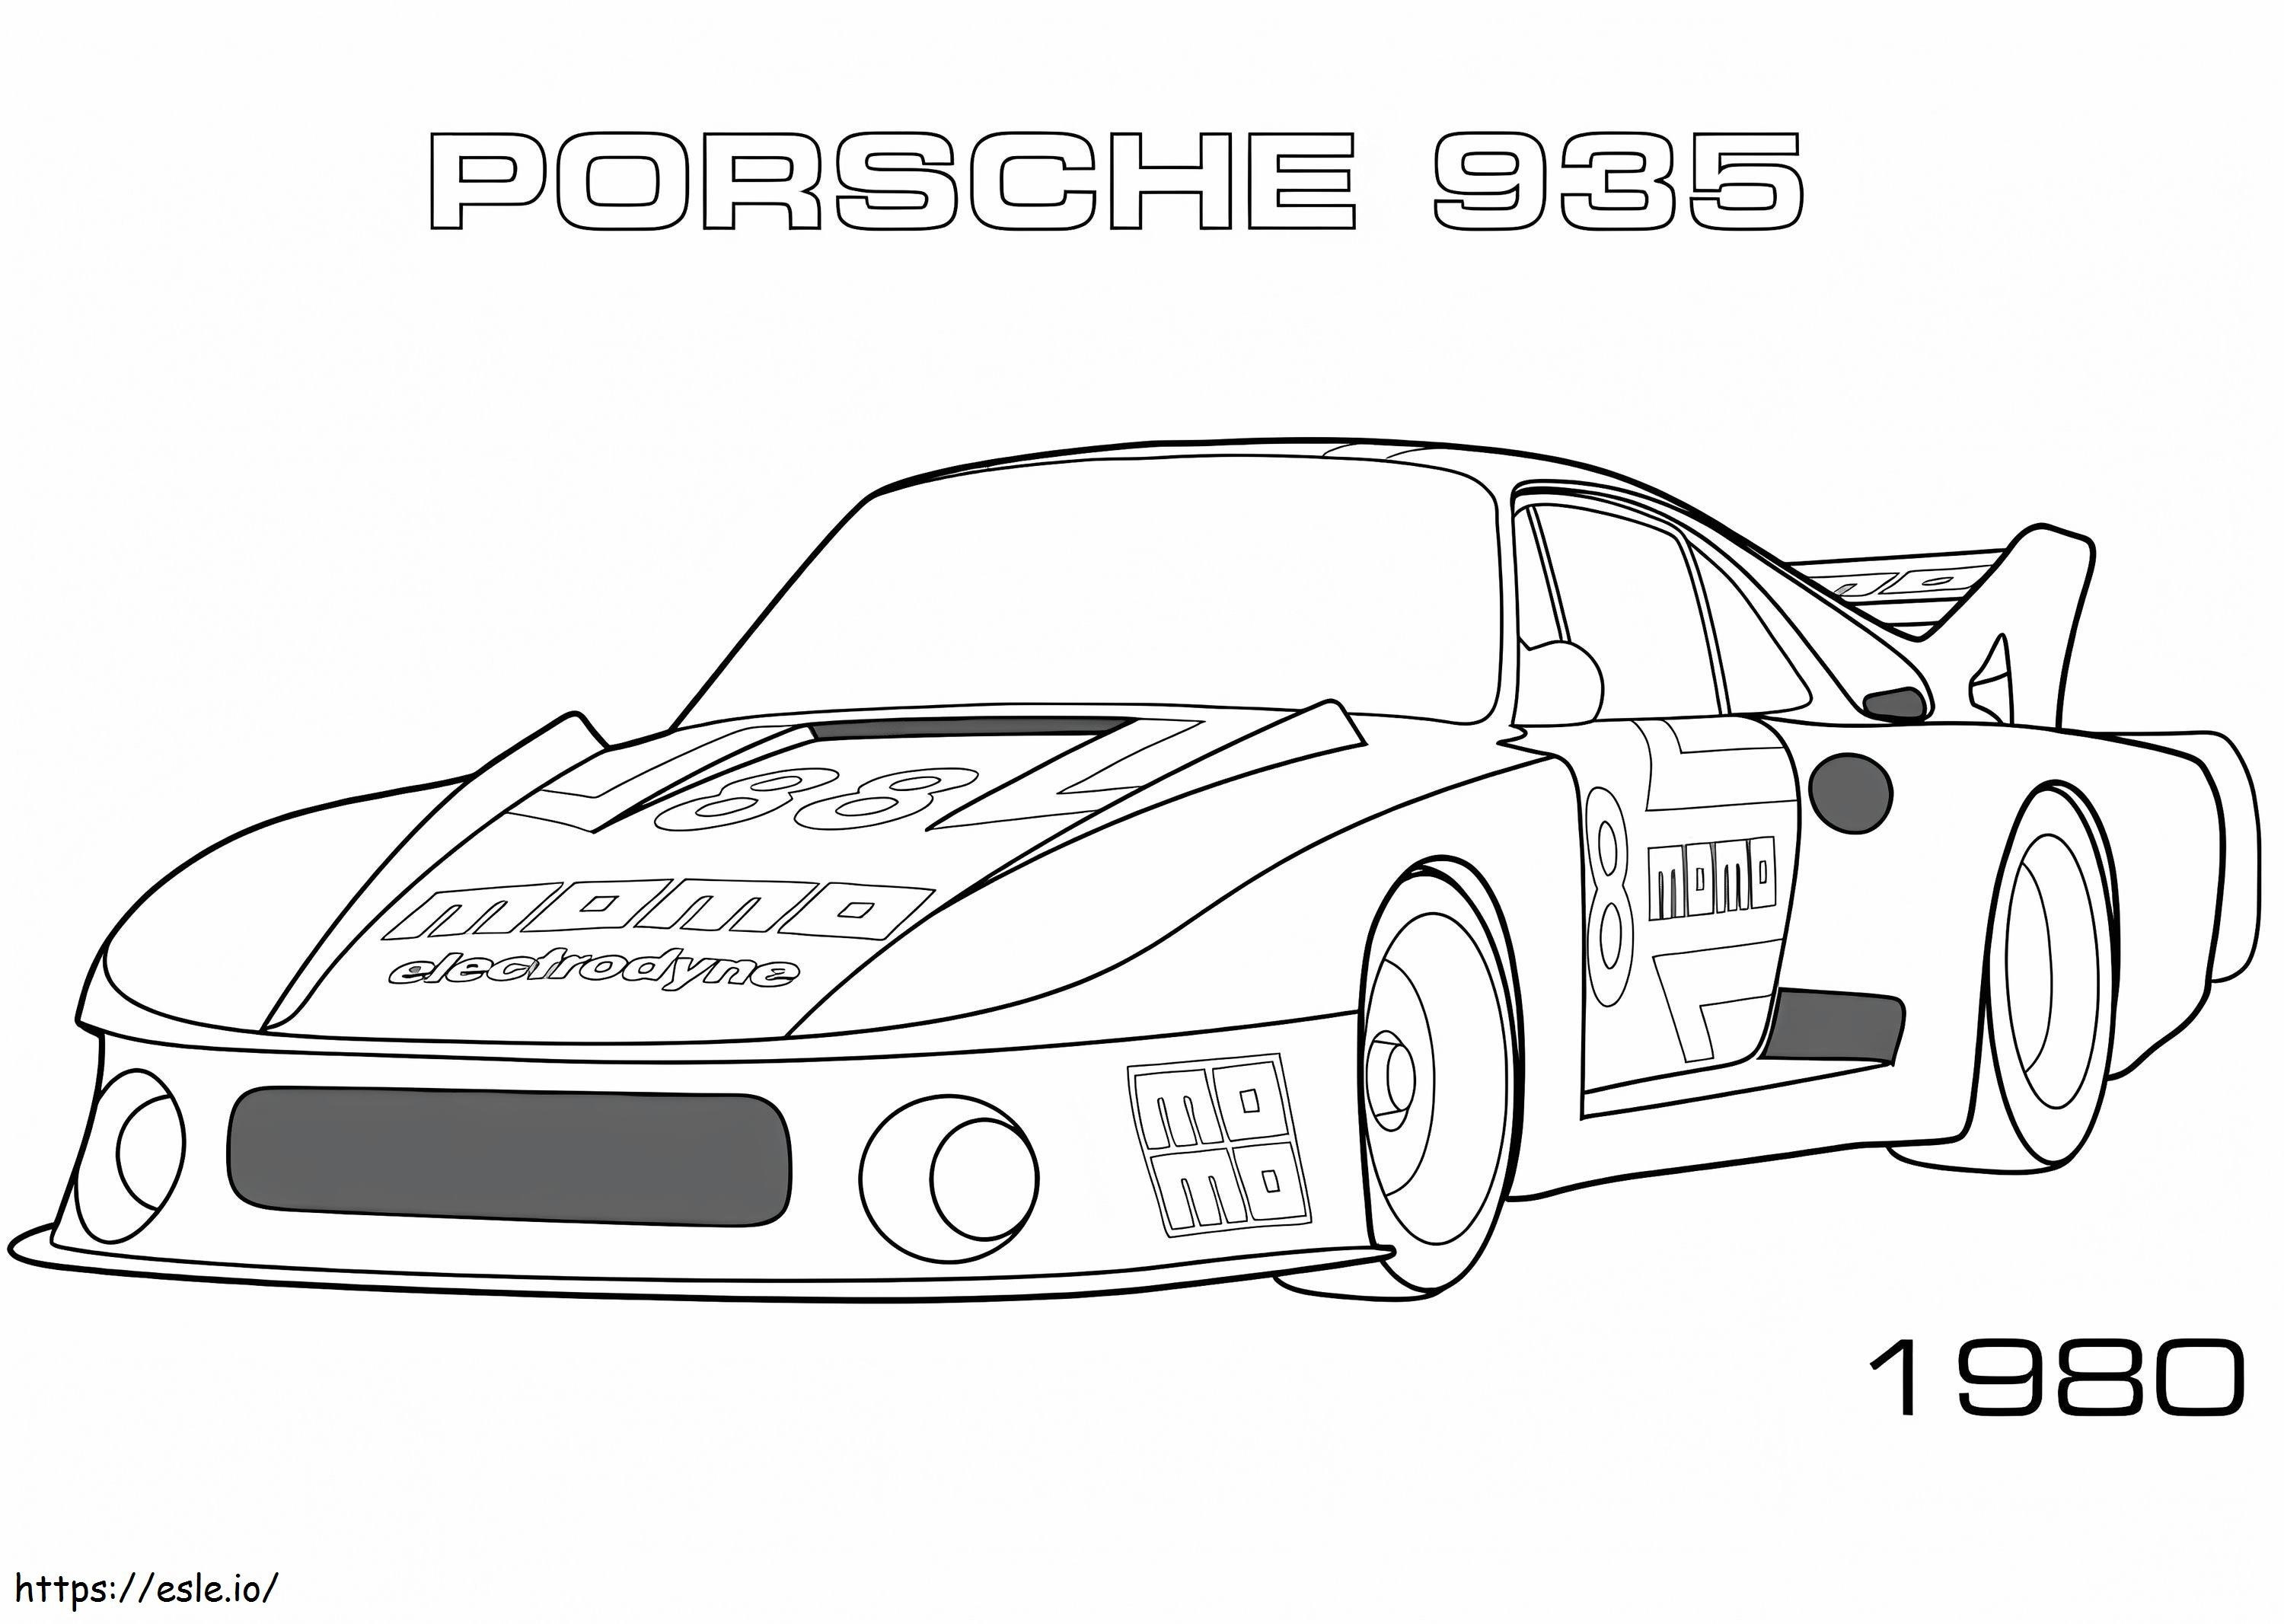  Porsche 935 para colorear